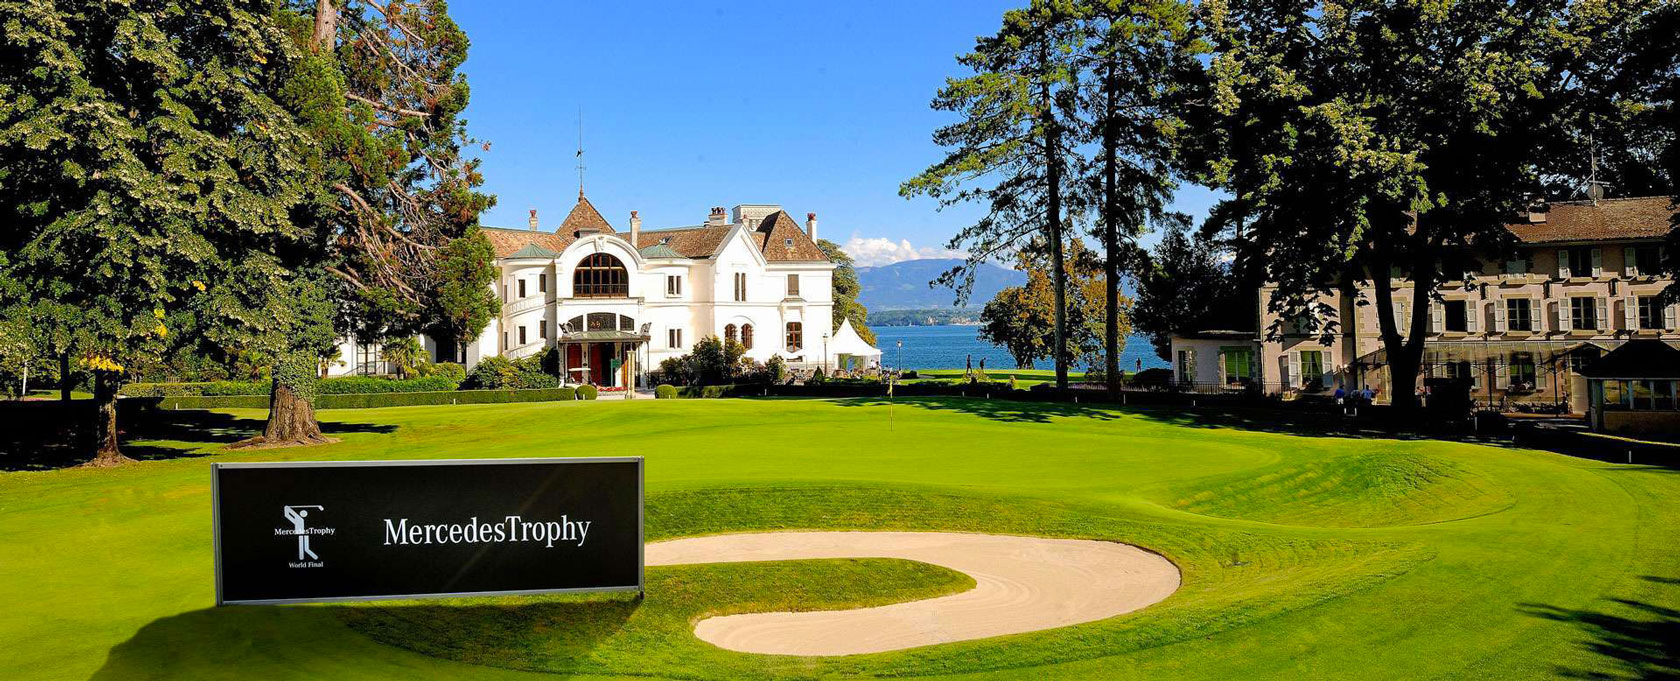 Mercedes Trophy Golf club domaine impérial de gland